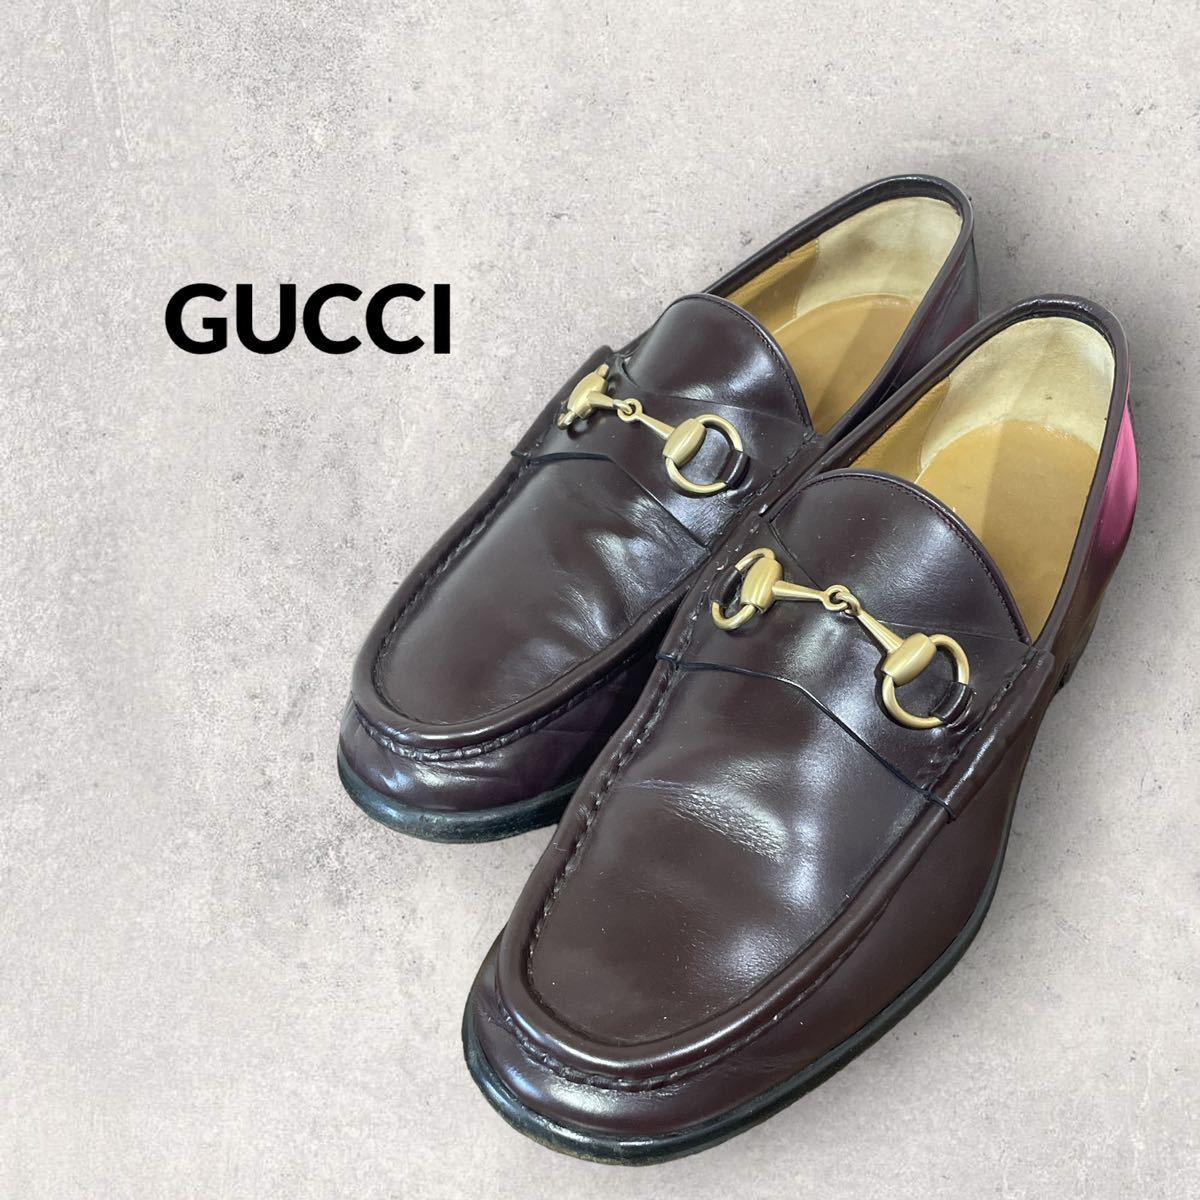 GUCCI グッチ イタリア製 ビットローファー レザー 黒 41 ゴールド金具 ホースビット 革靴 26㎝ ブラック